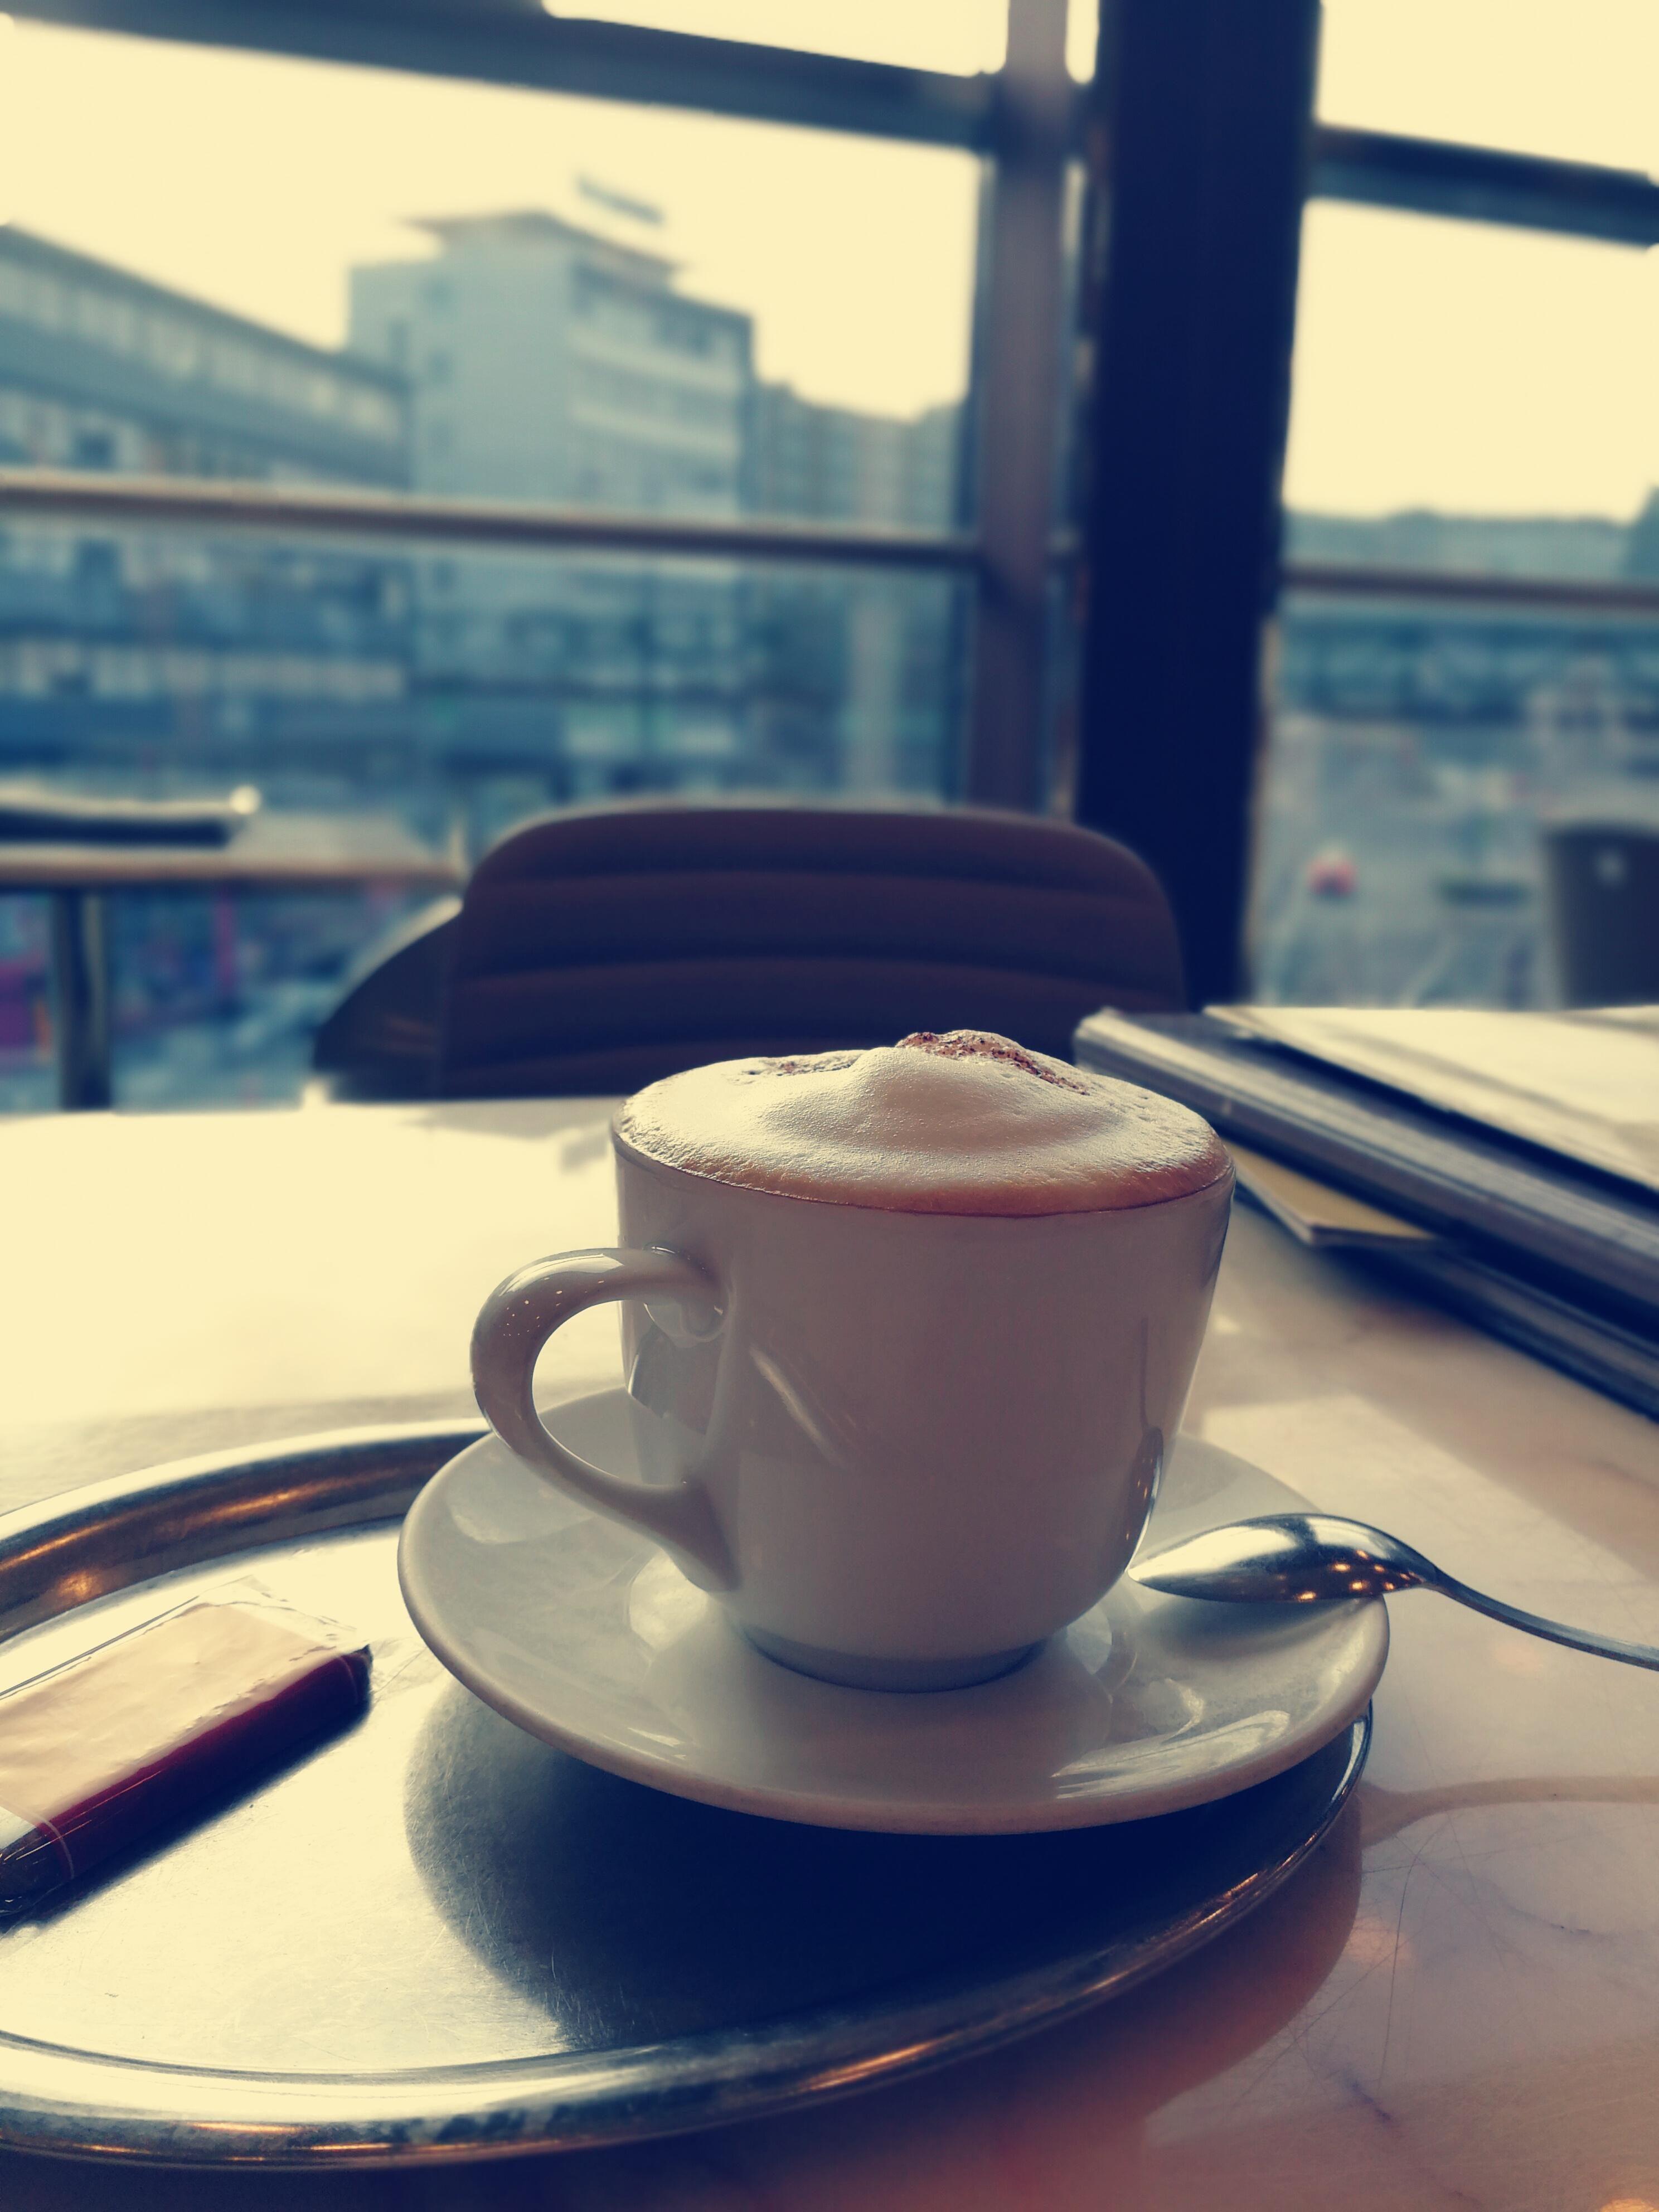 Guten Morgen Germany...😎
#Frühling #Coffee #Wuppertal #GuteLaune